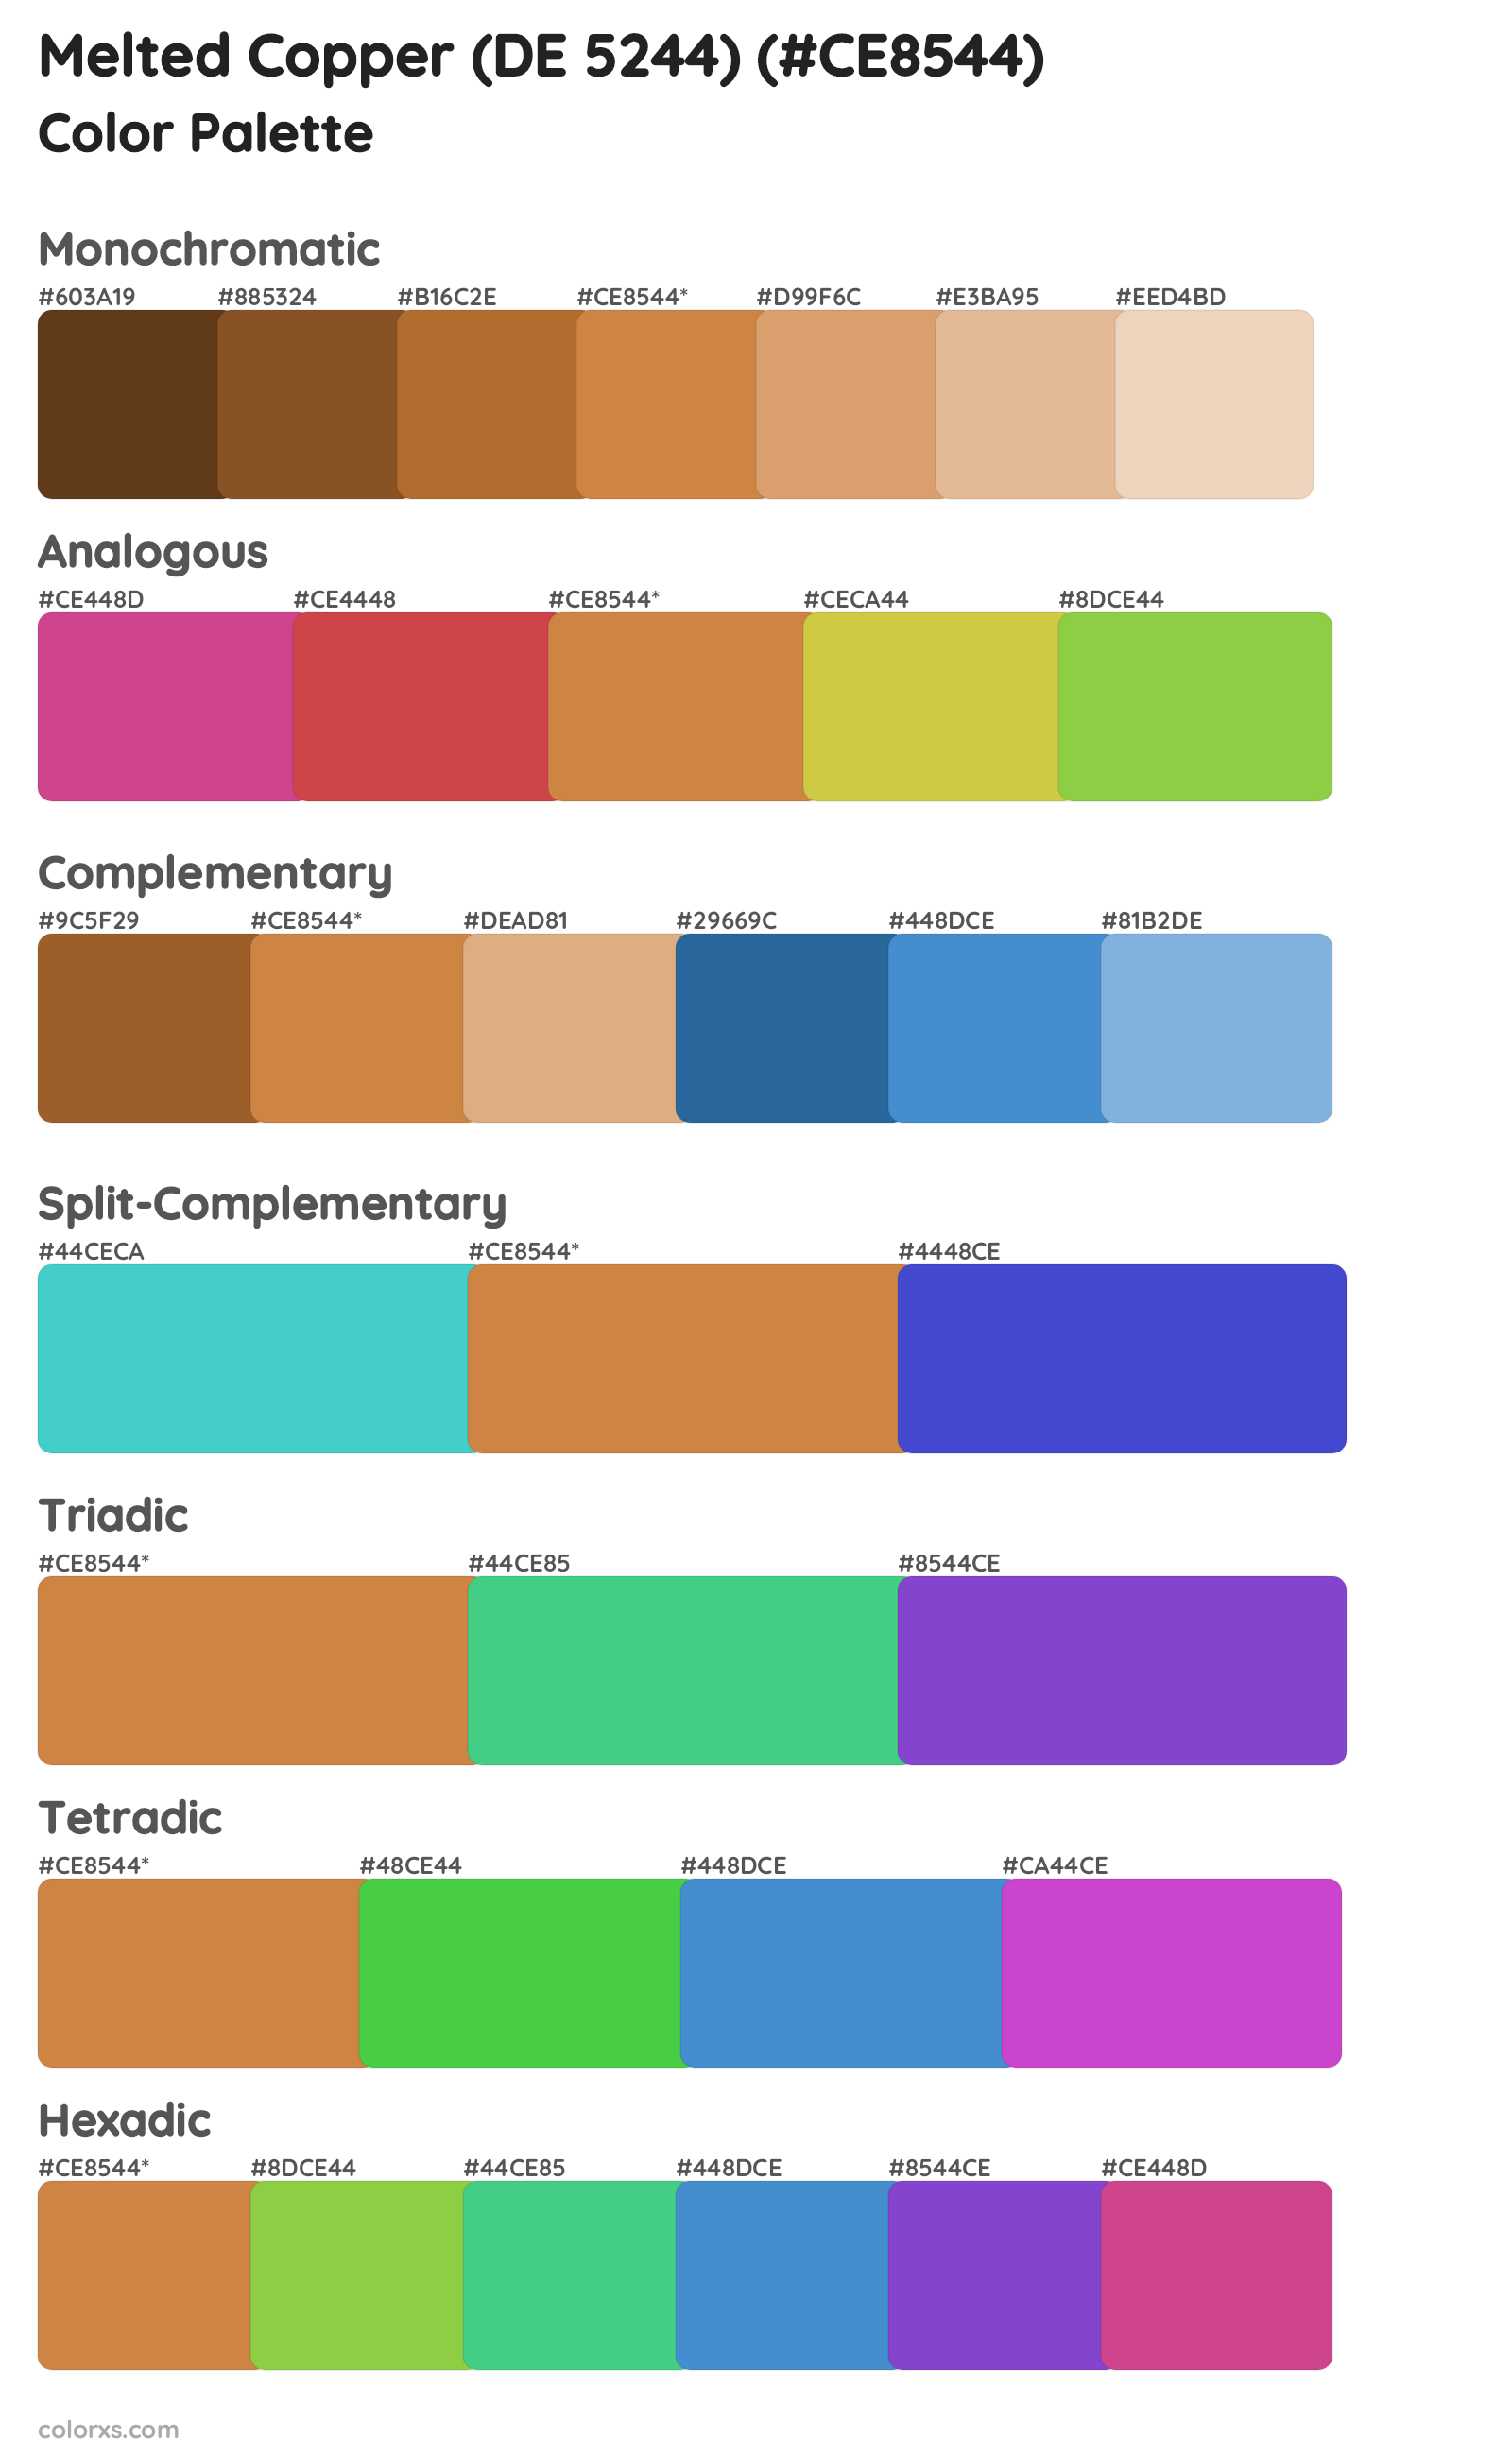 Melted Copper (DE 5244) Color Scheme Palettes